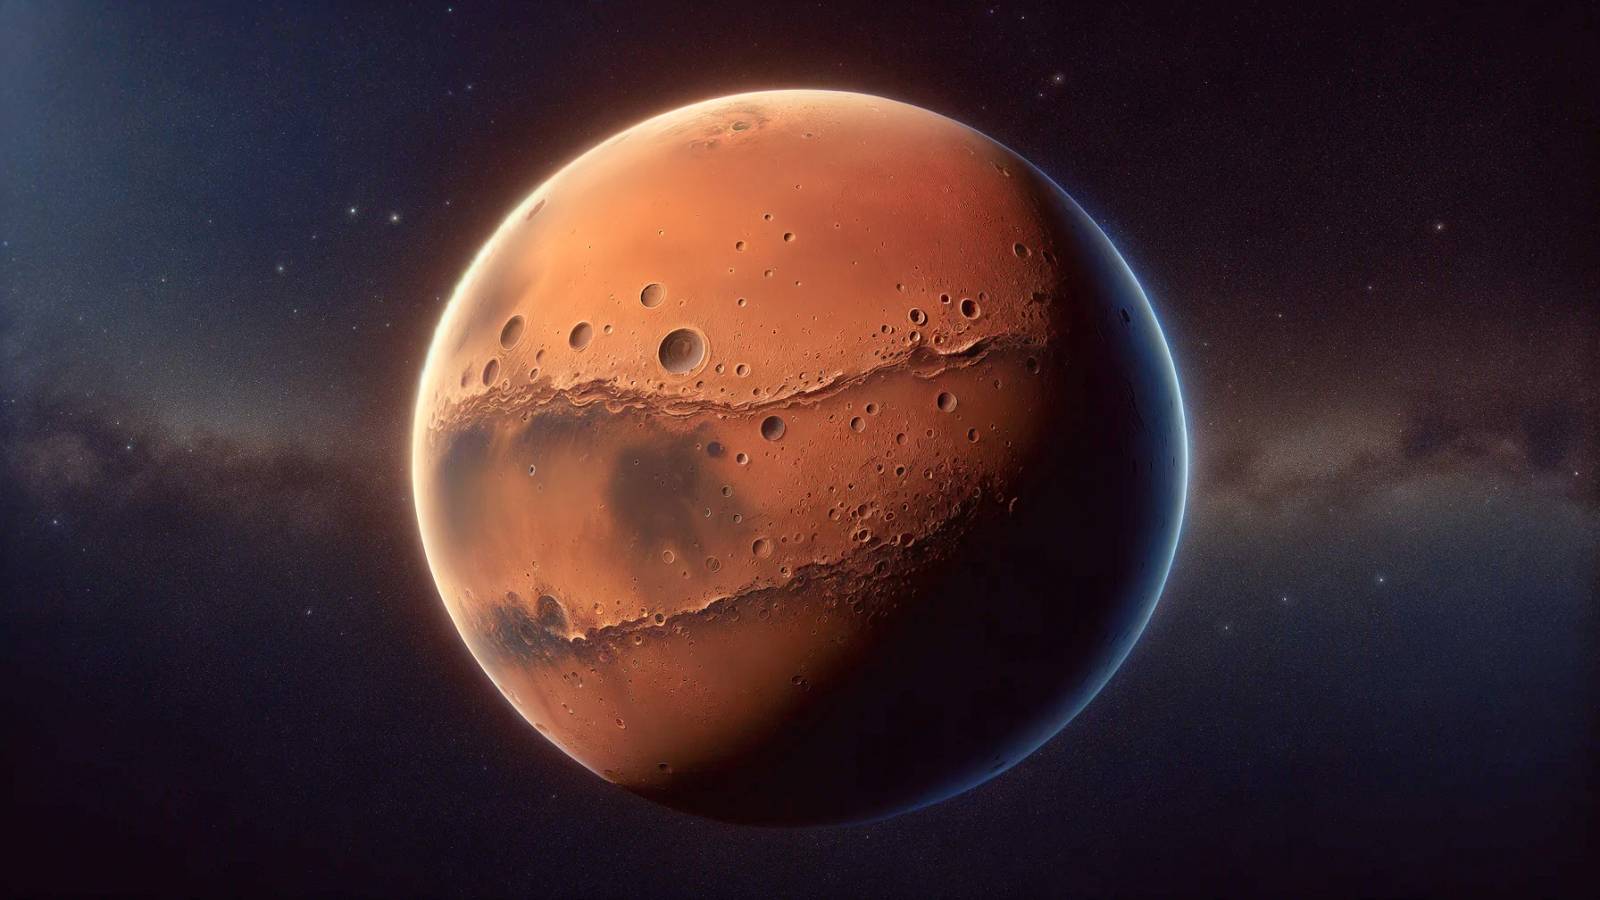 ESA AWESOME Discovery Planet Mars tillkännagav forskare